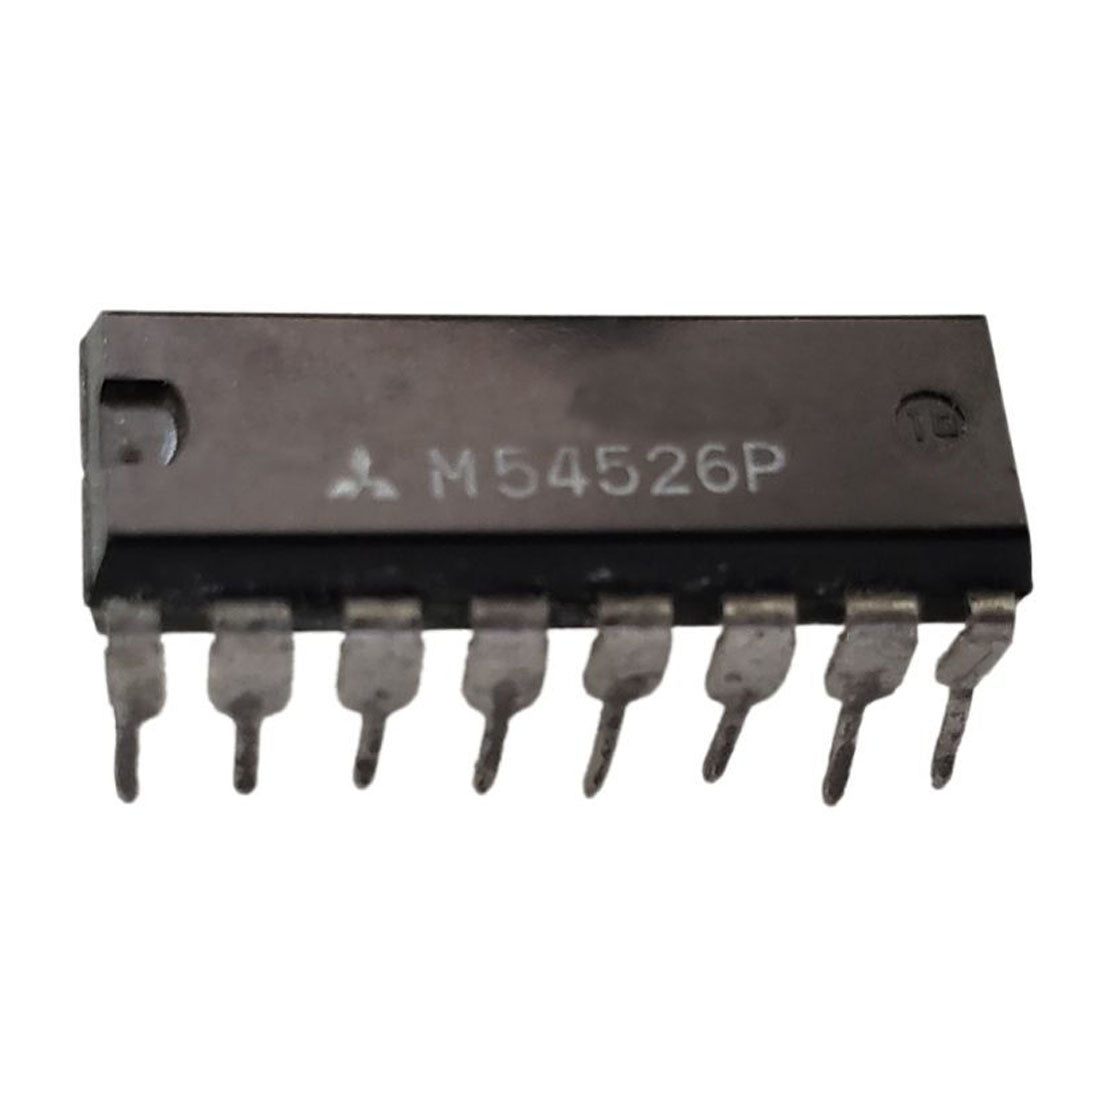 MITSUBISHI M54526 Componente elettronico, circuito integrato, 16 contatti